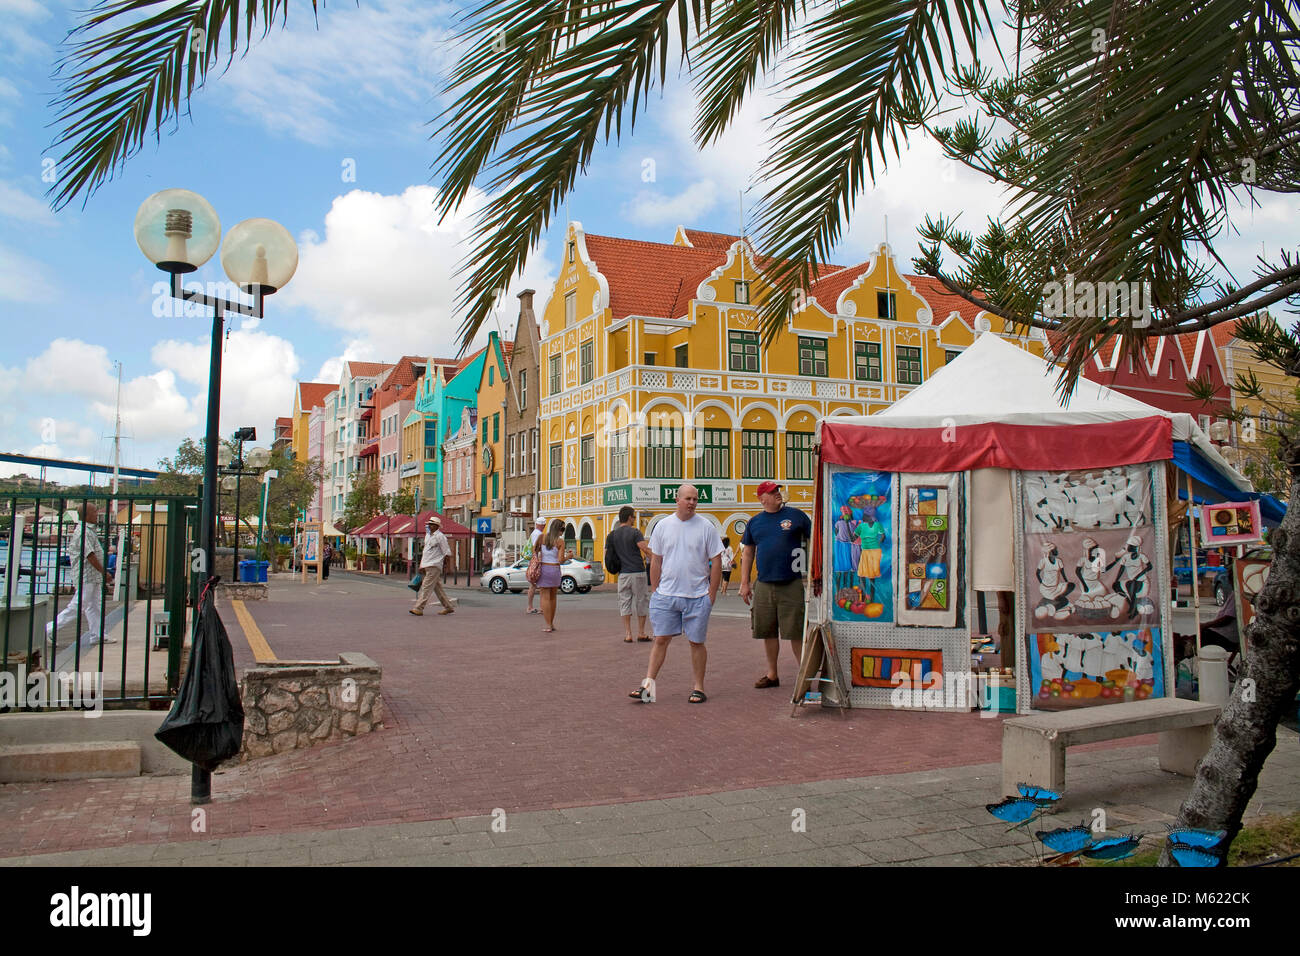 Pressione di stallo di souvenir al lungomare di Punda distretto, dietro l'edificio Punha e scambi arcade, Willemstad, Curacao, Antille olandesi, dei Caraibi Foto Stock